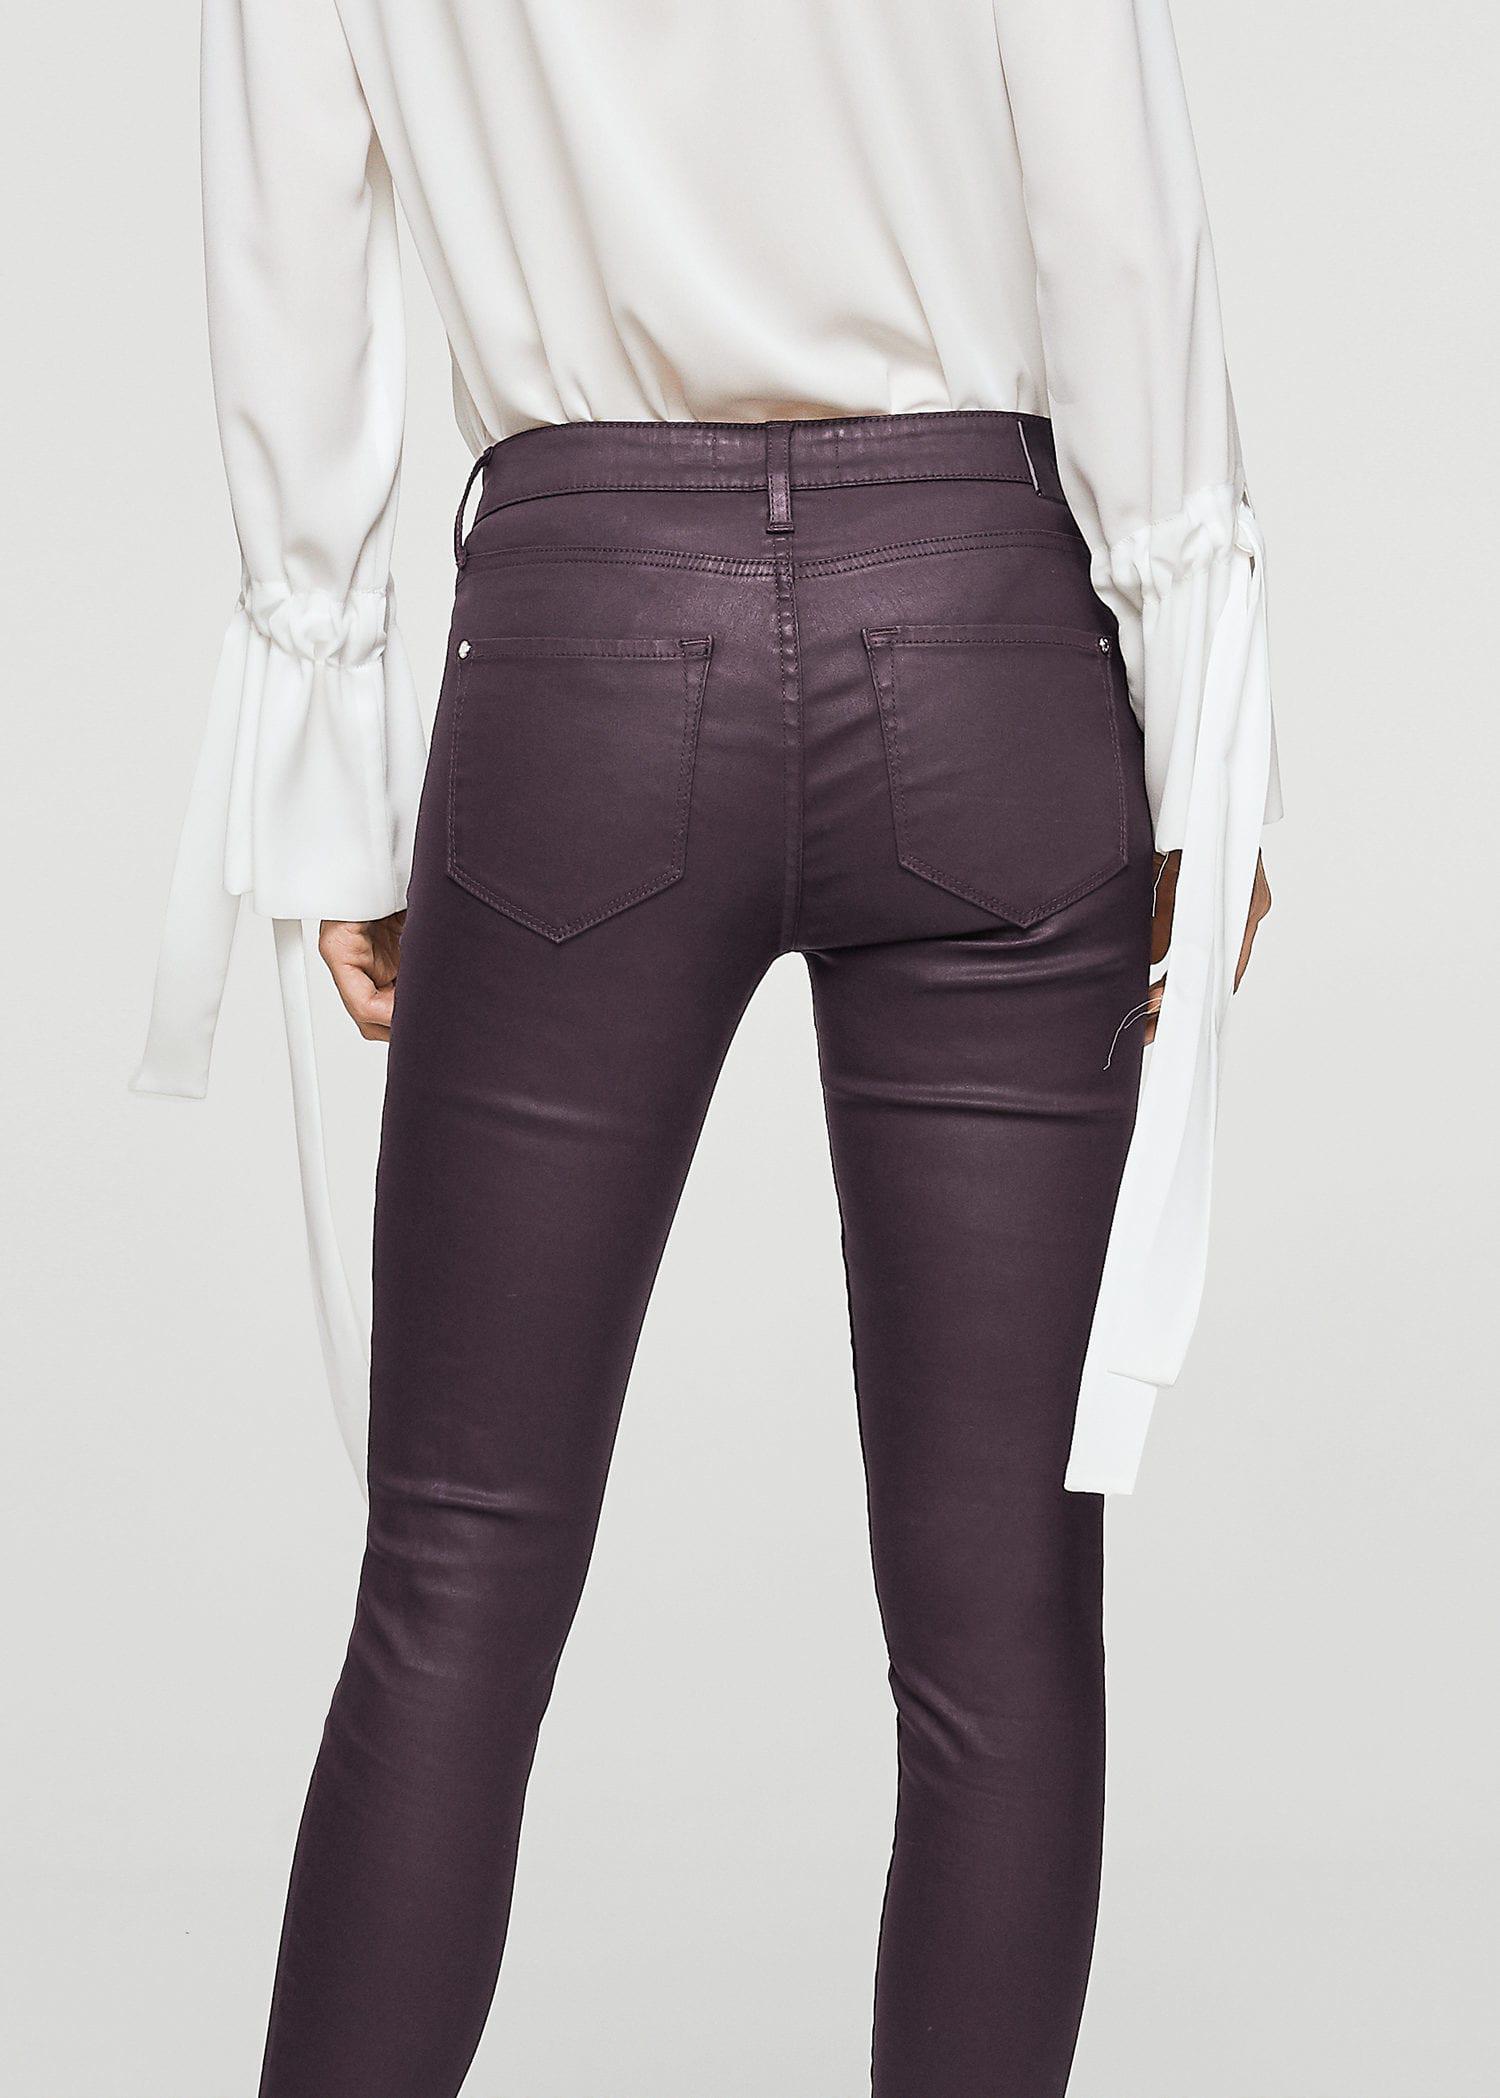 Mango Denim Waxed Skinny Belle Jeans in Burgundy (Purple) - Lyst